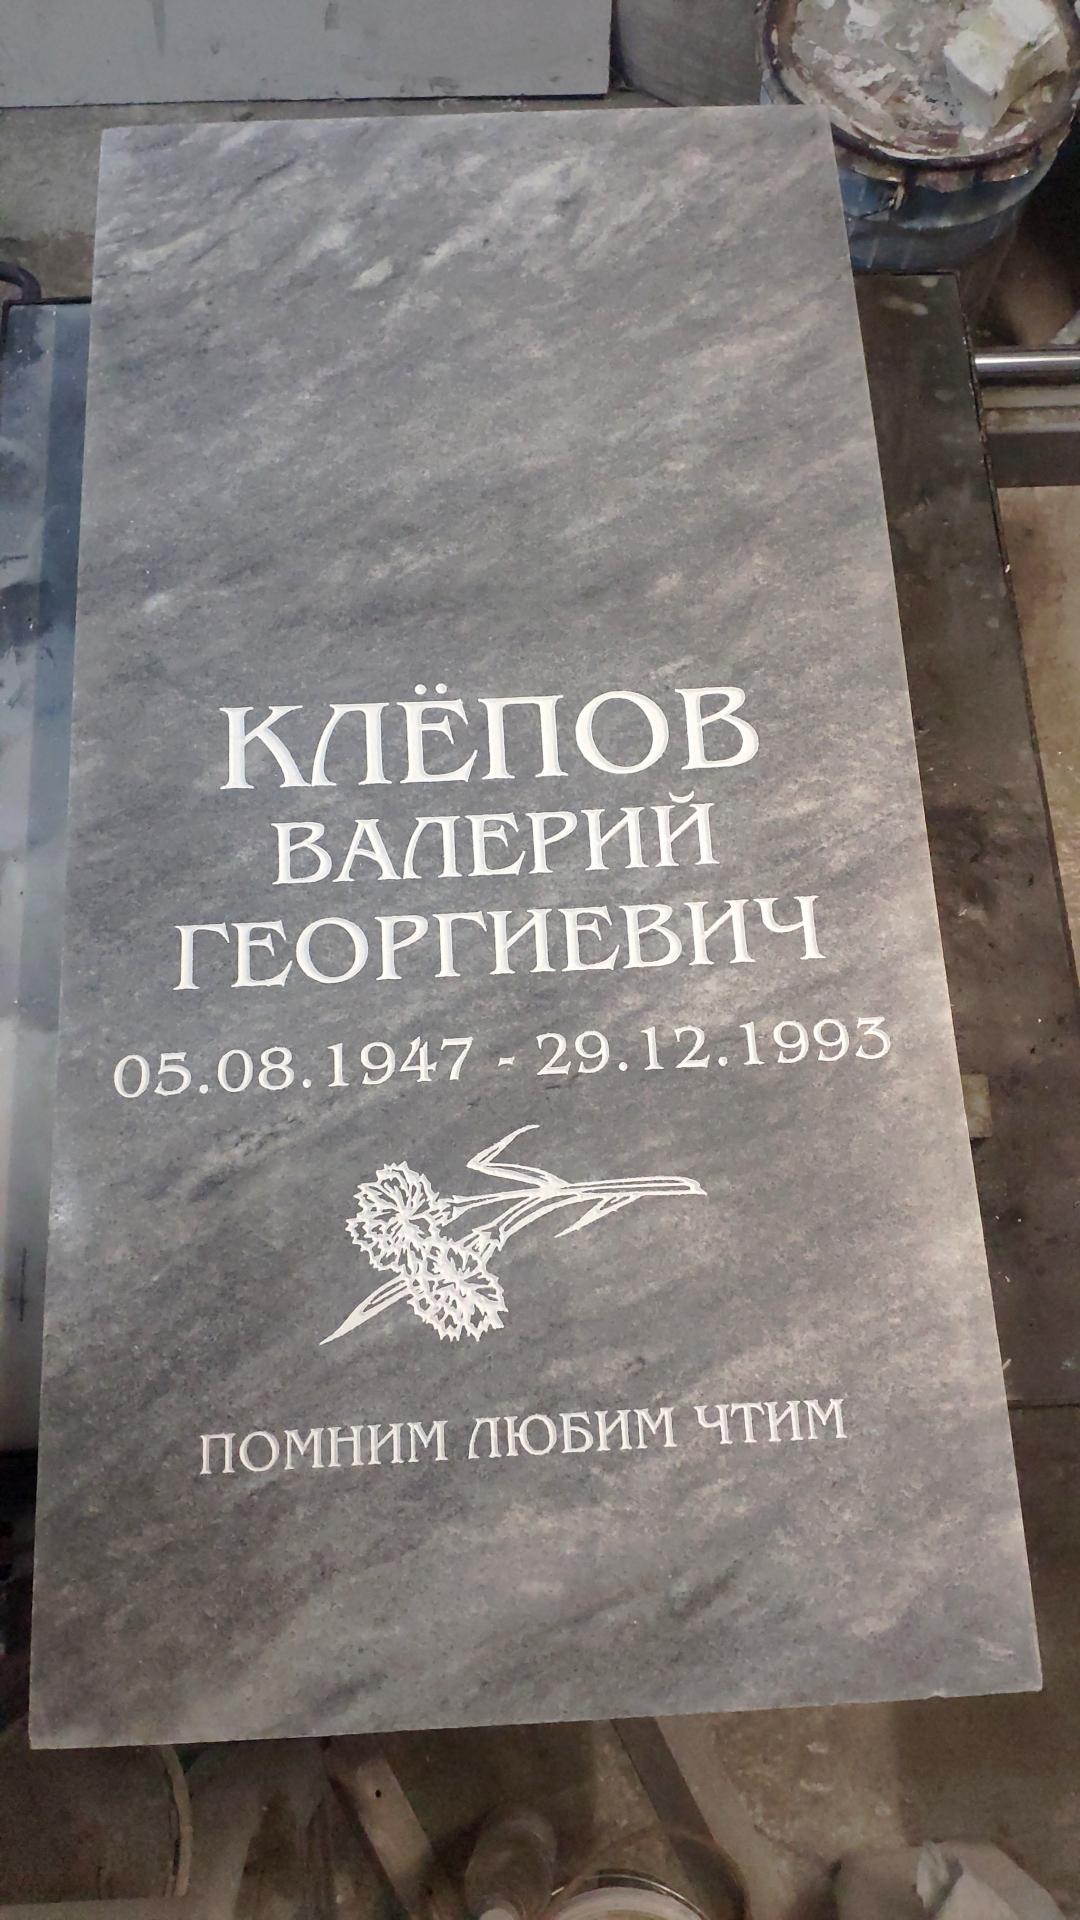 Памятник Киров купить недорого мрамор гранит 